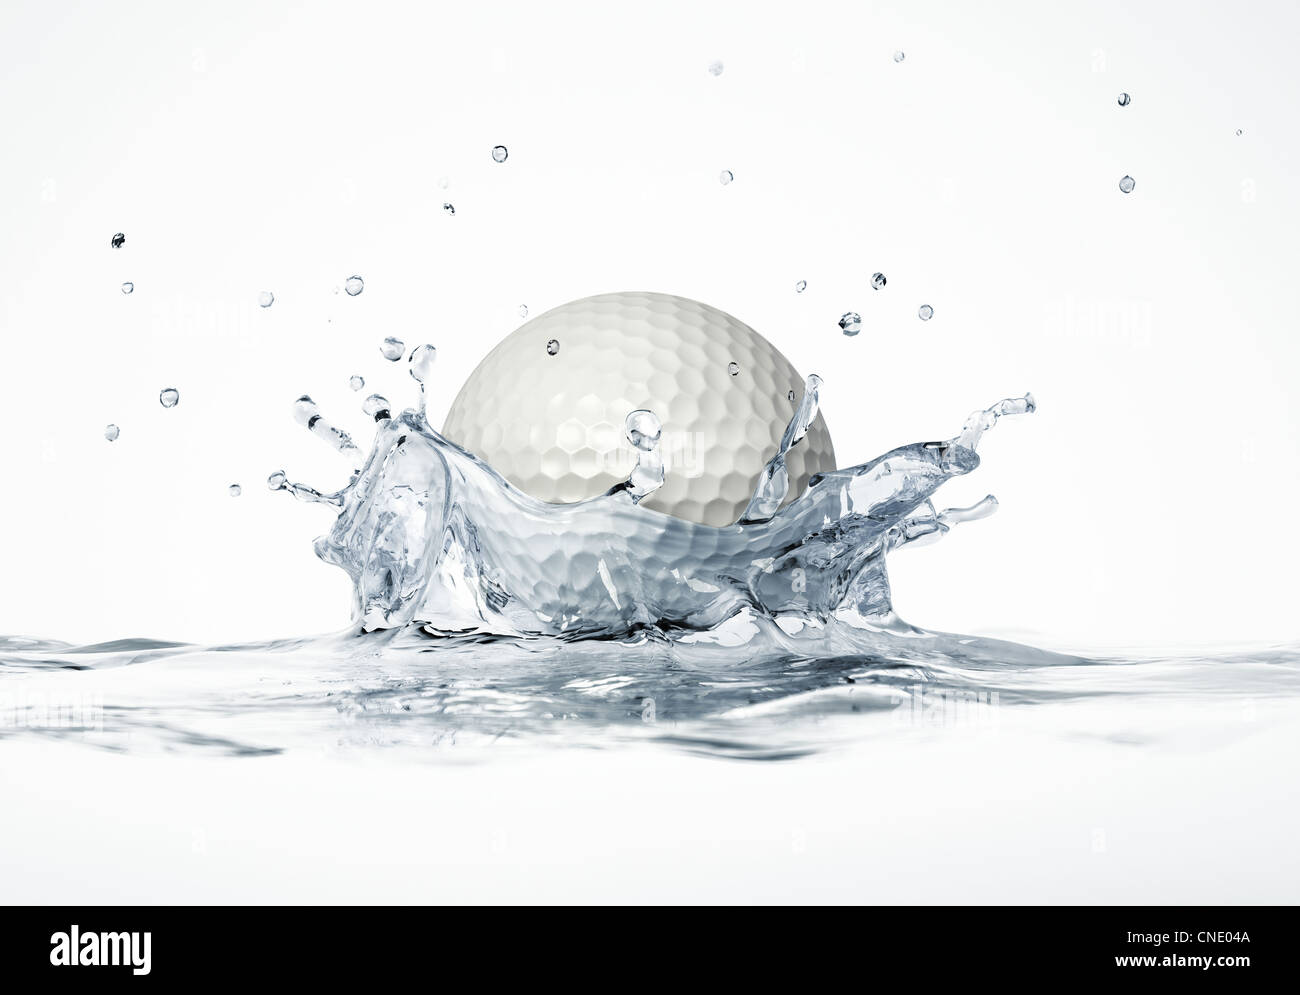 White pallina da golf schizzi in acqua formando una corona splash. Su sfondo bianco, con profondità di campo. 3 D rendering digitale. Foto Stock